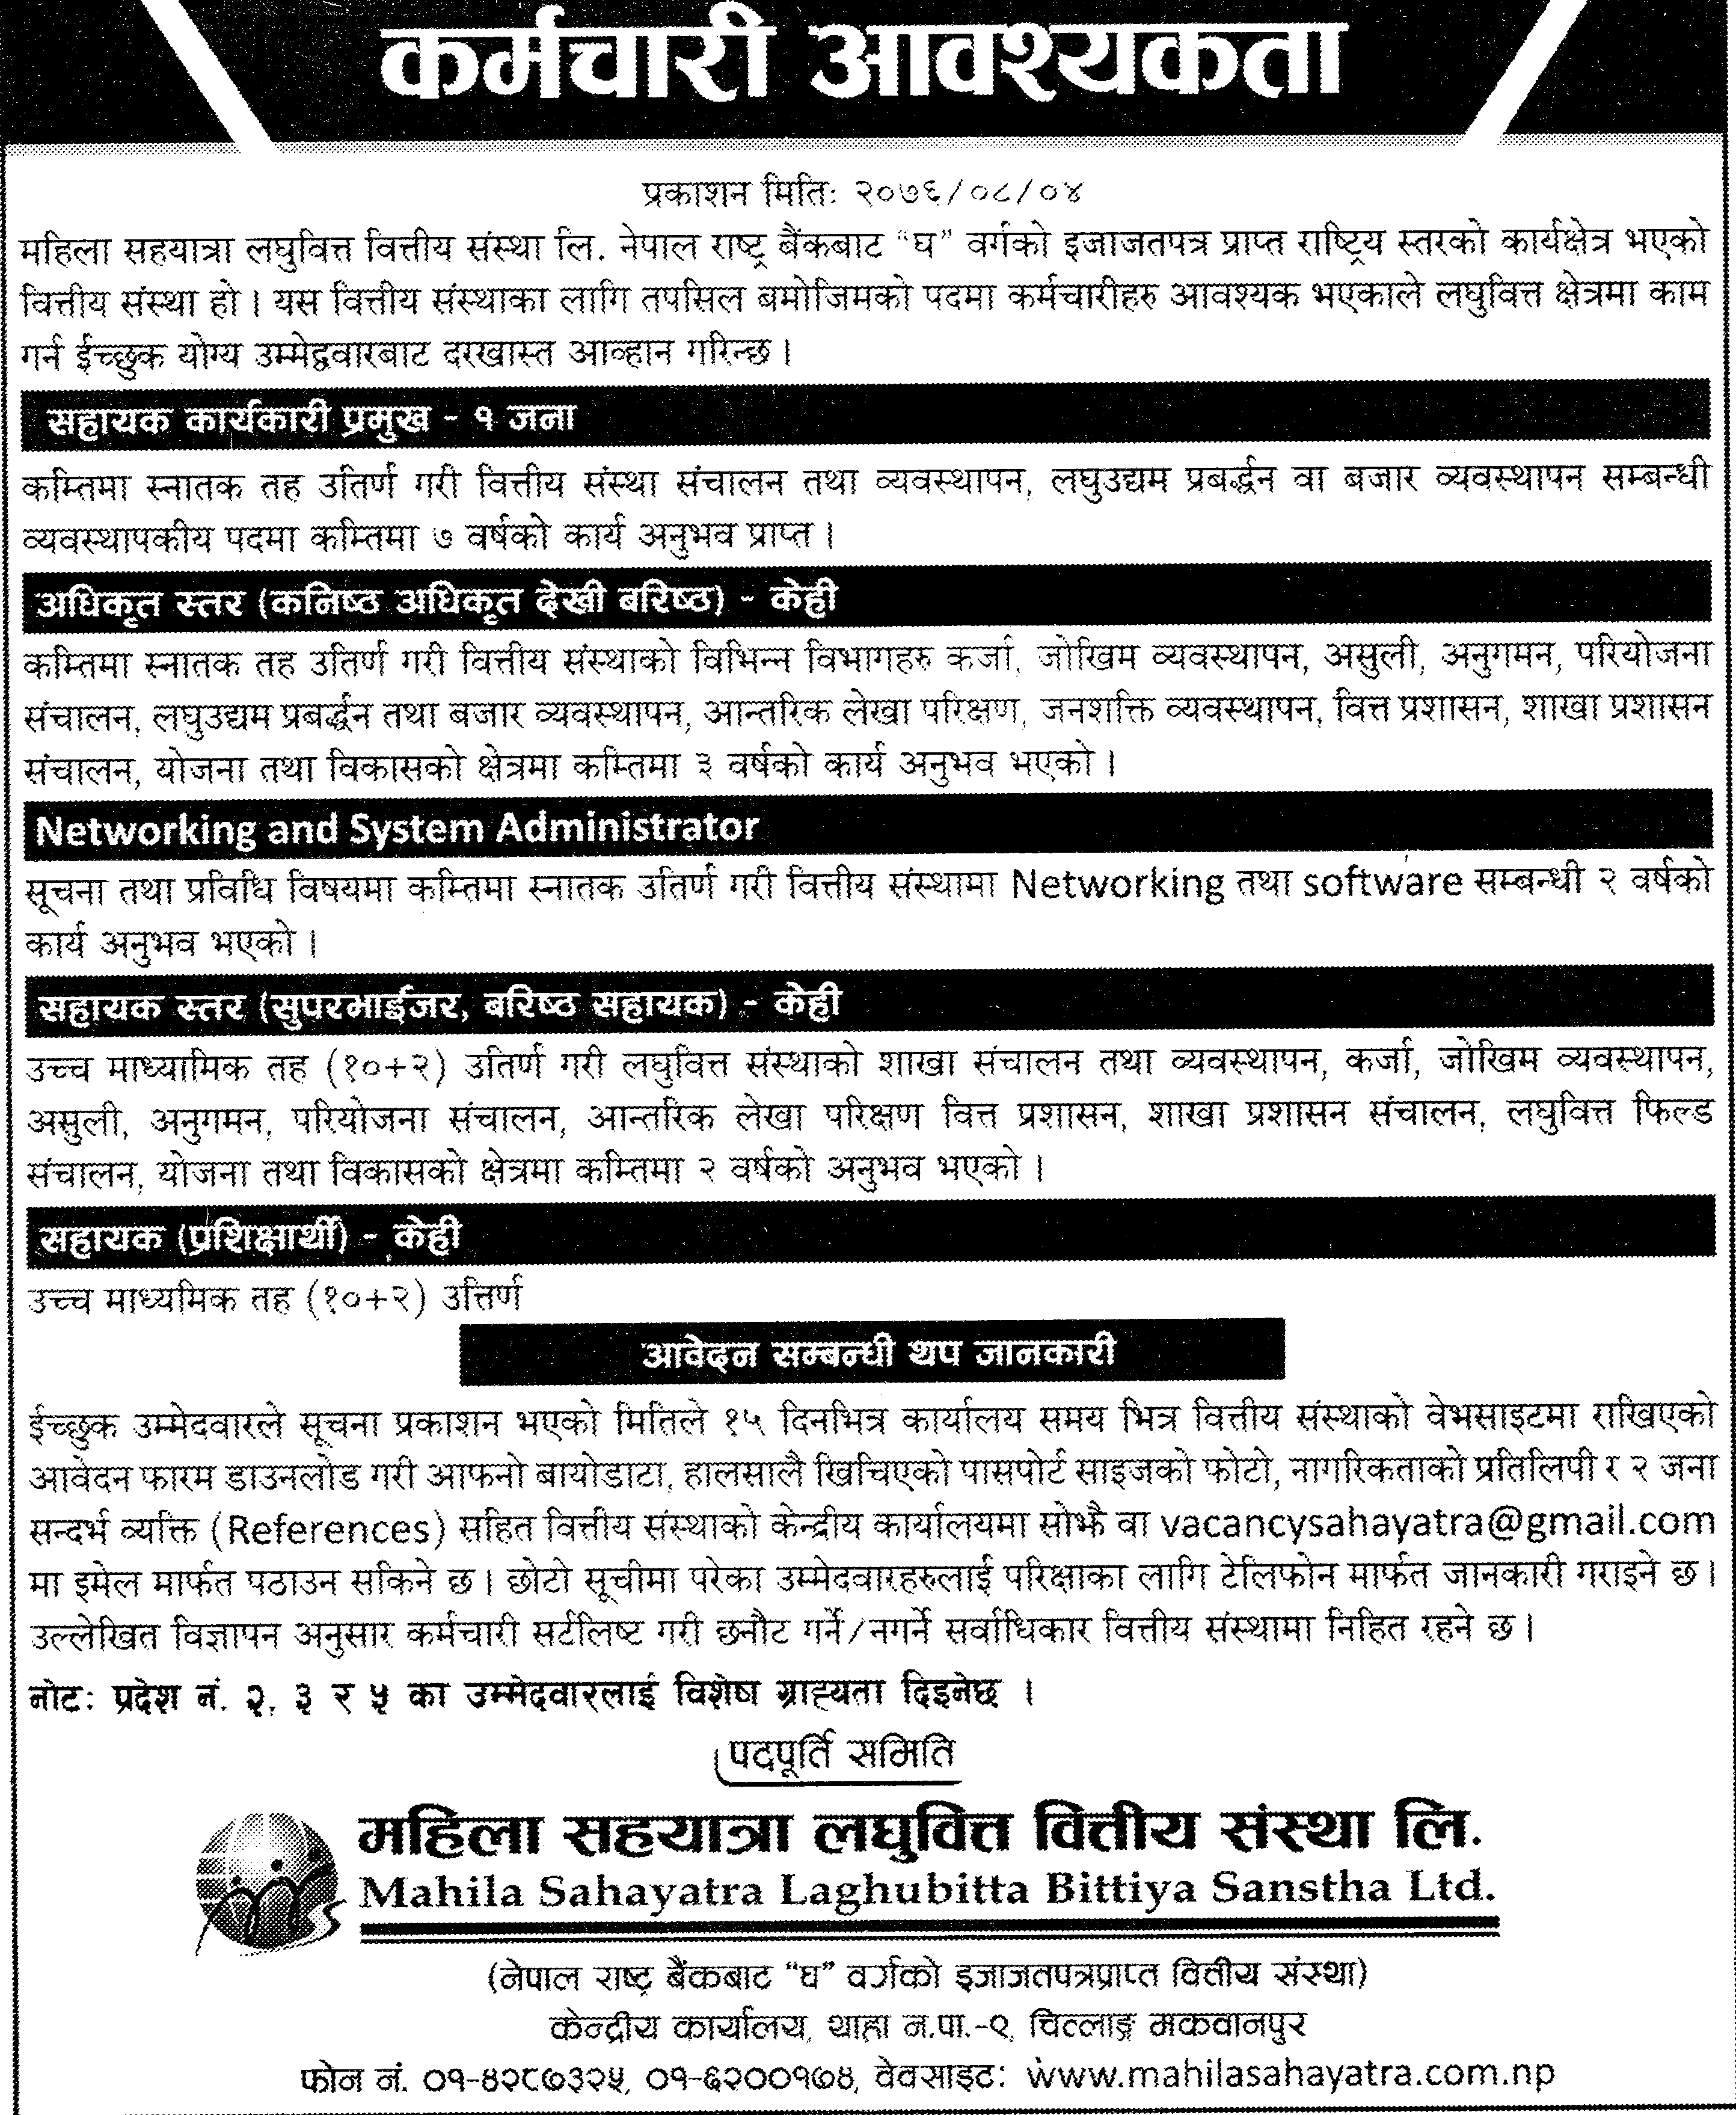 Mahila Sahayatra Laghubitta Bittiya Sanstha Limited Vacancy